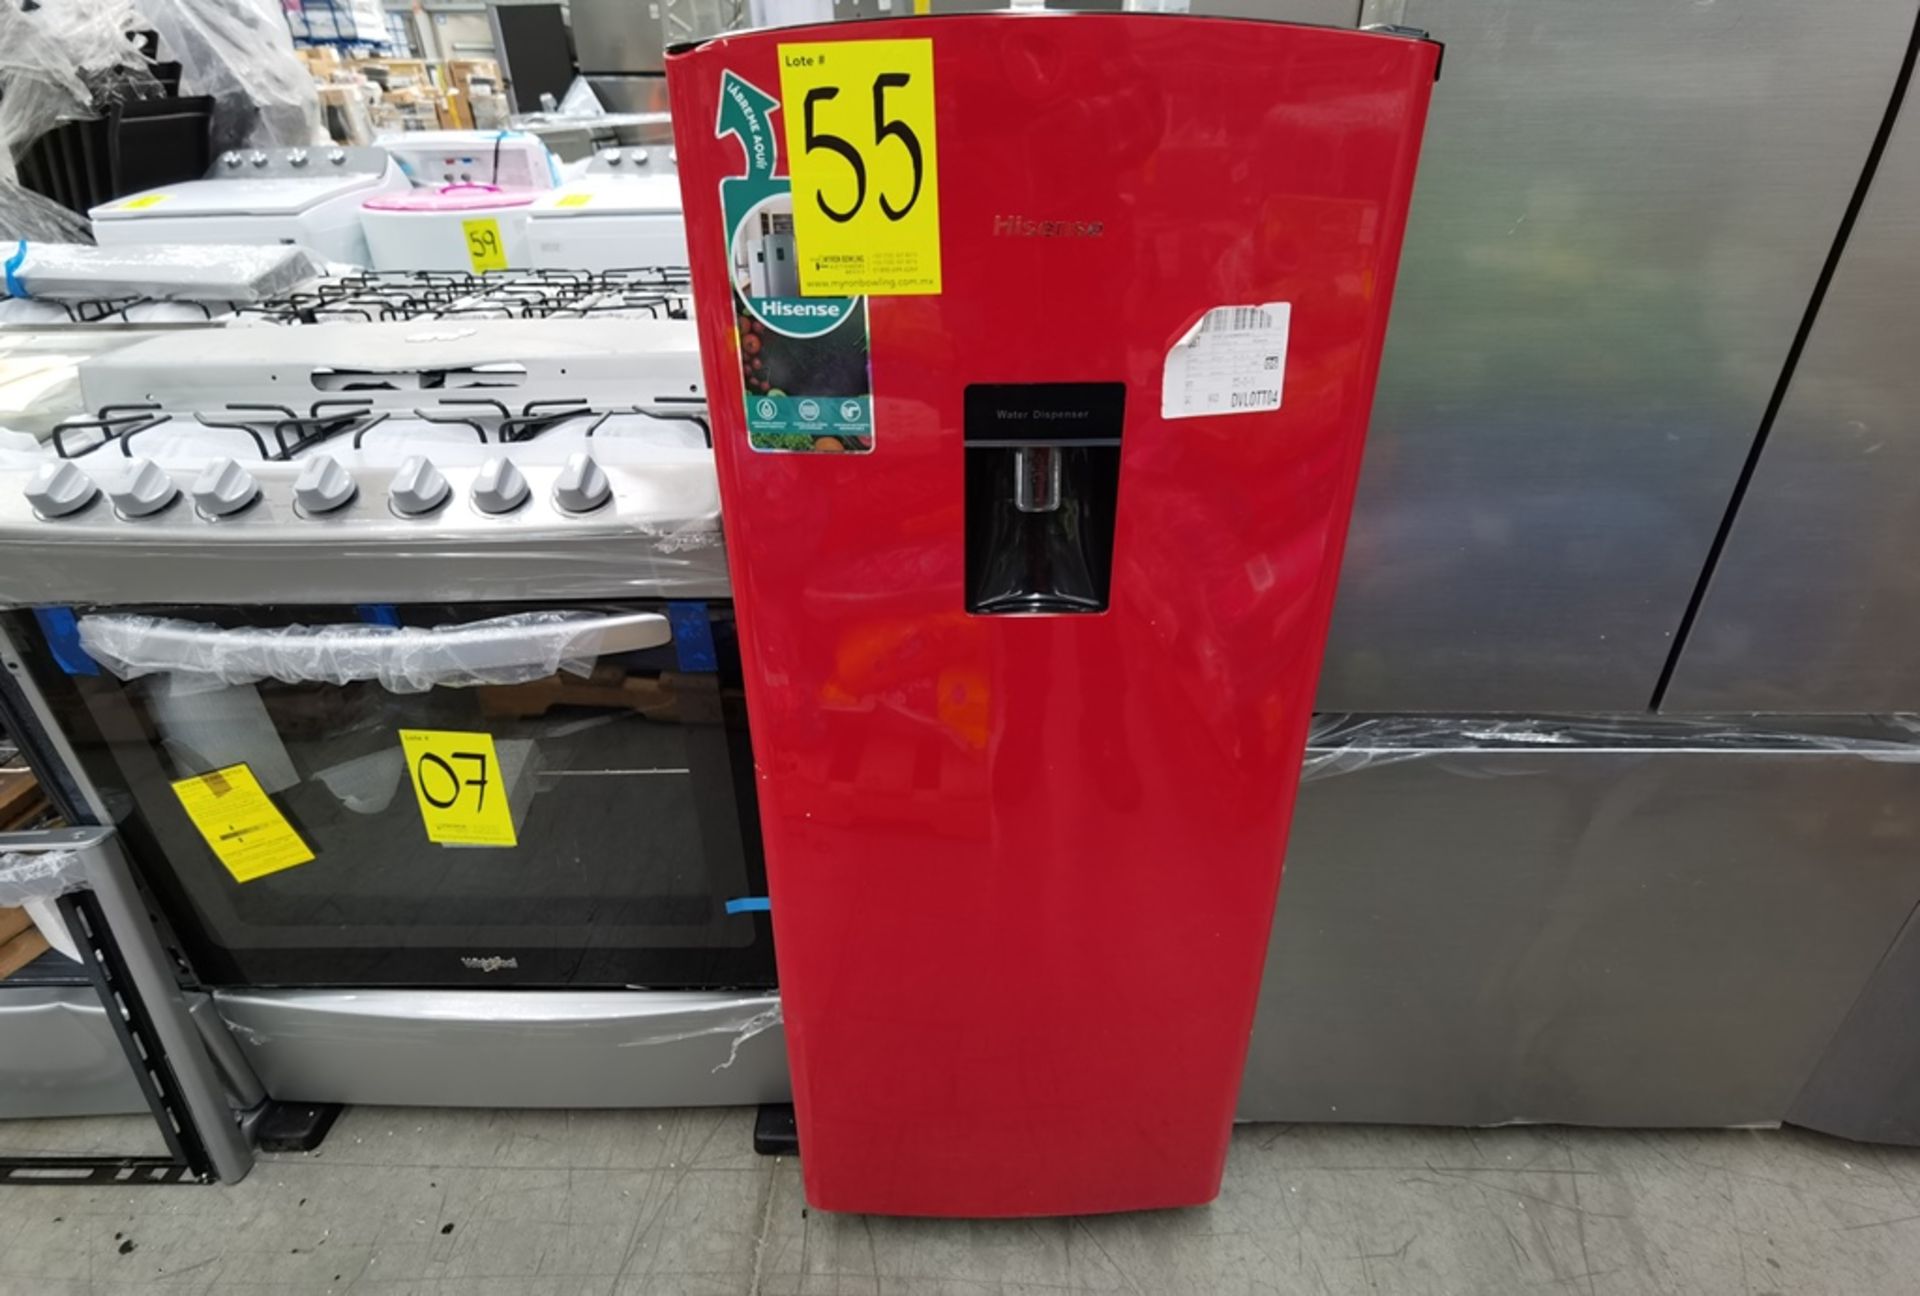 1 Refrigerador con Dispensador de Agua Marca Hisense, Modelo RR63D6WRX, Serie 0568, Color Rojo, Dañ - Image 3 of 9